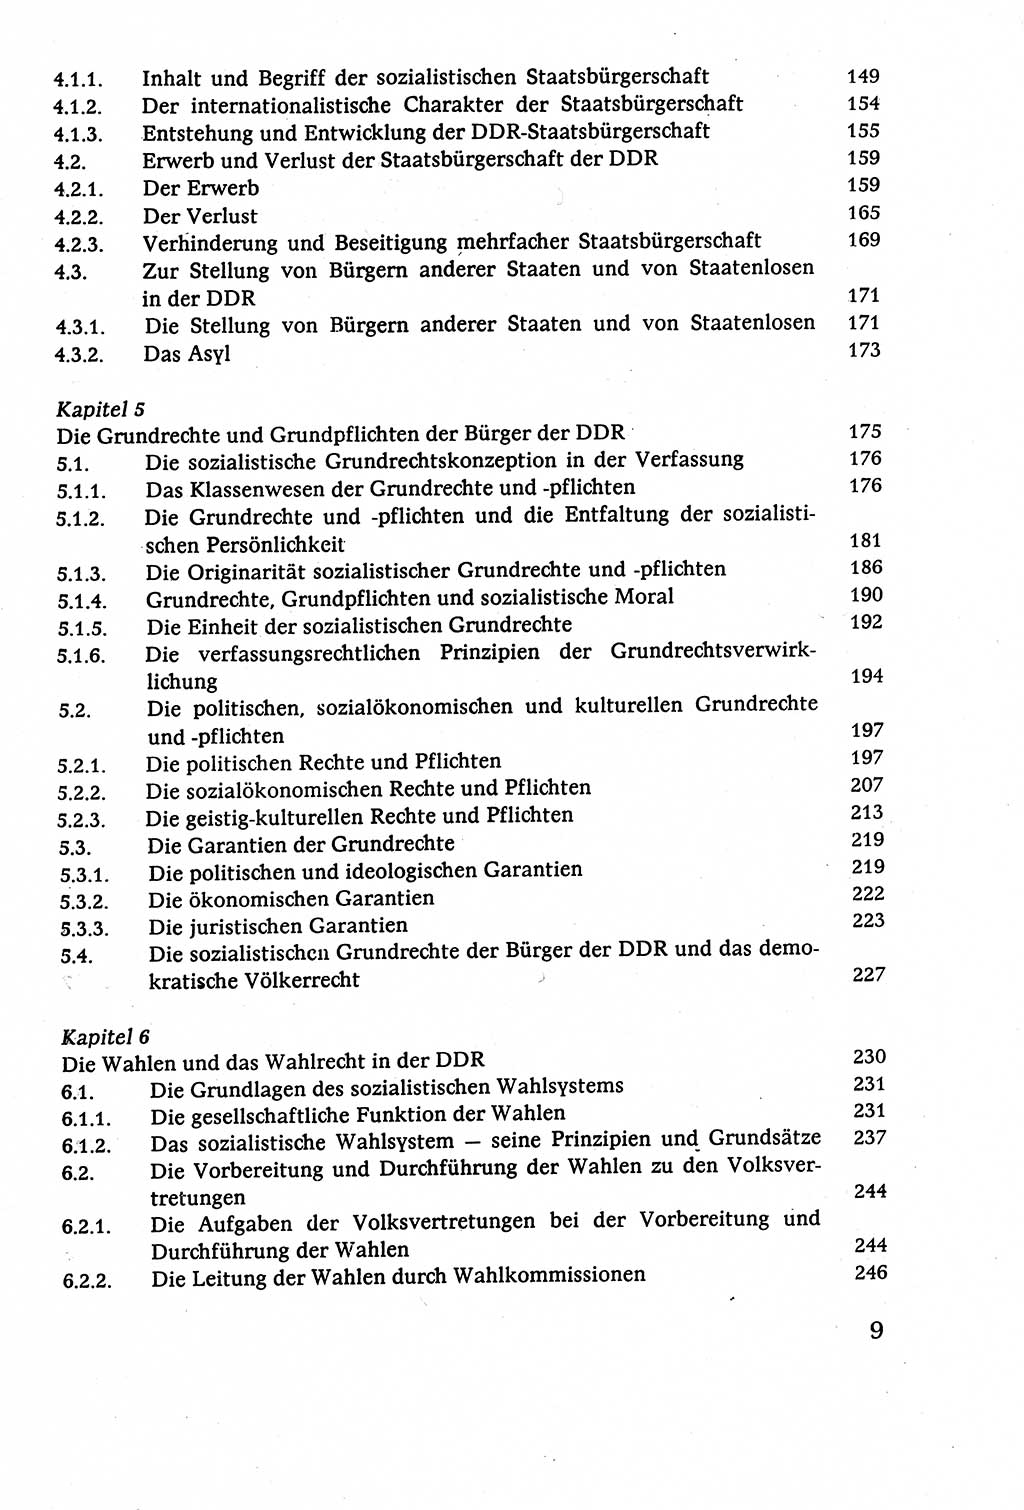 Staatsrecht der DDR (Deutsche Demokratische Republik), Lehrbuch 1977, Seite 9 (St.-R. DDR Lb. 1977, S. 9)